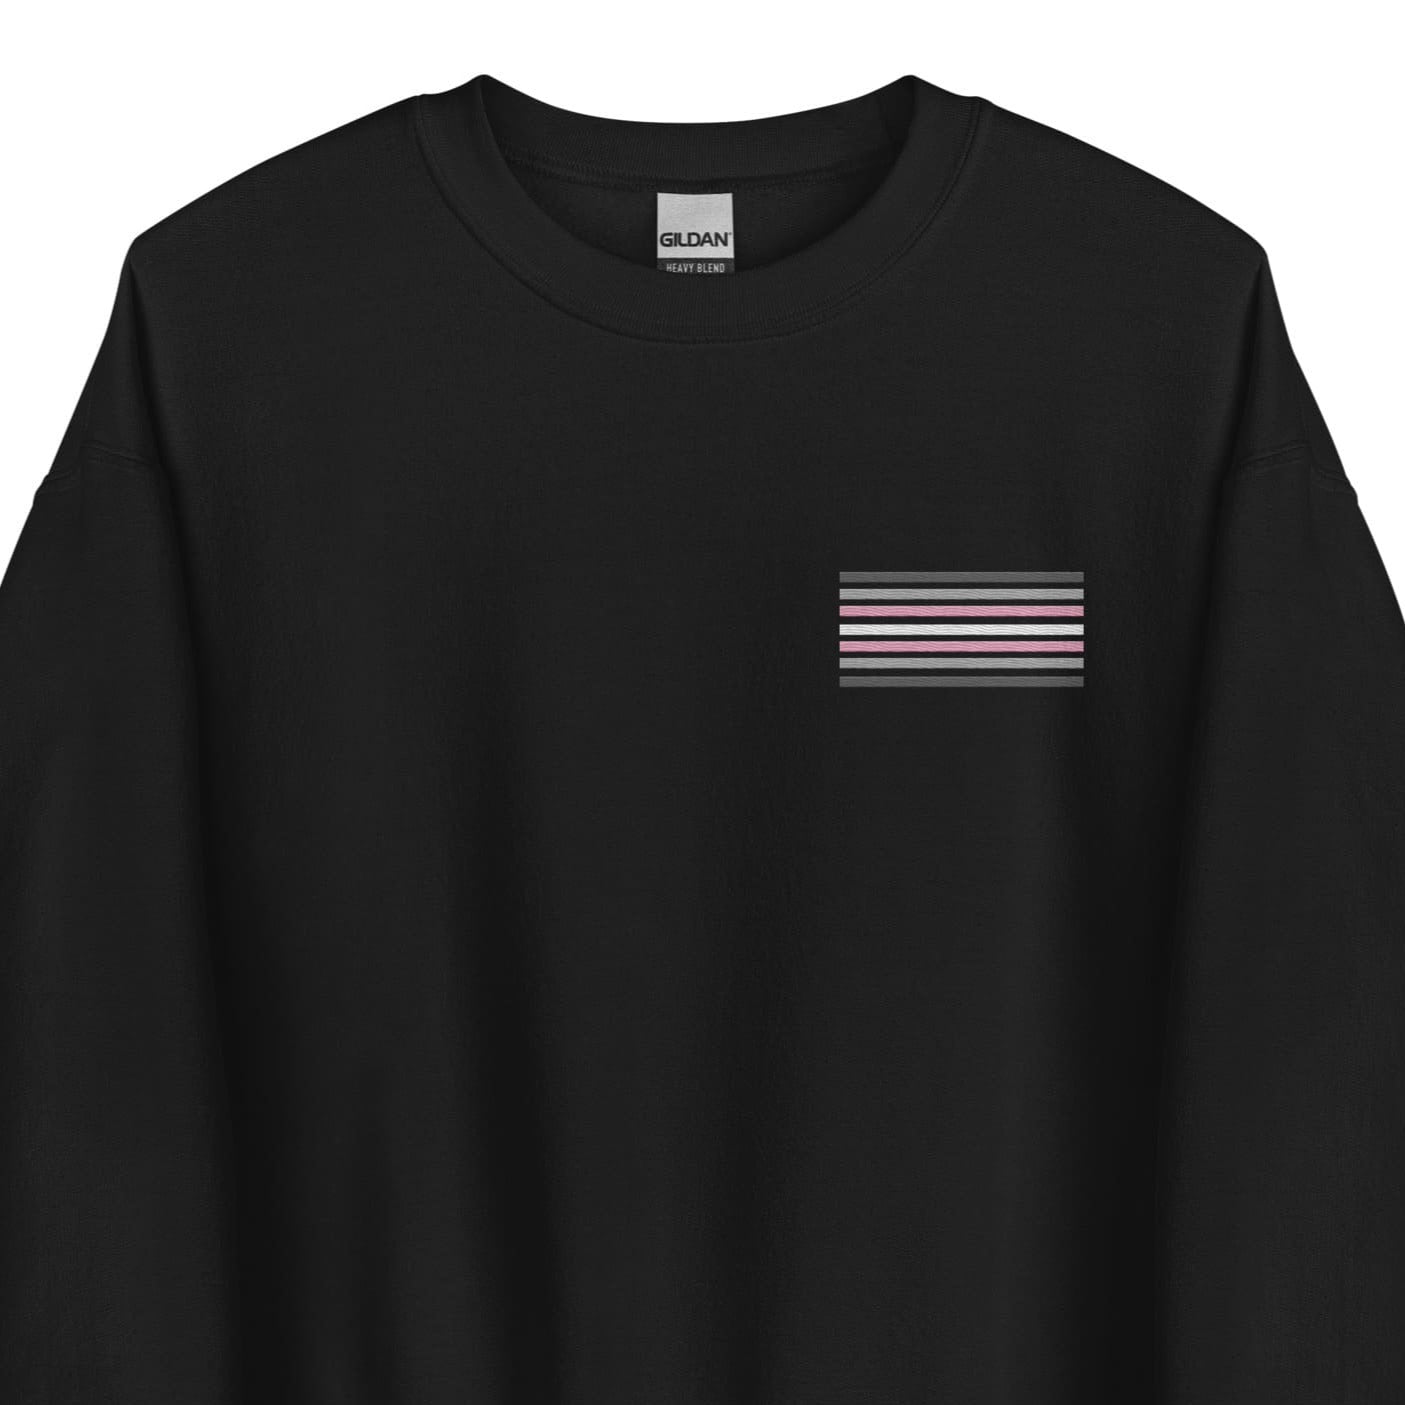 demigirl sweatshirt, subtle demigender pride flag embroidered pocket design sweater, main